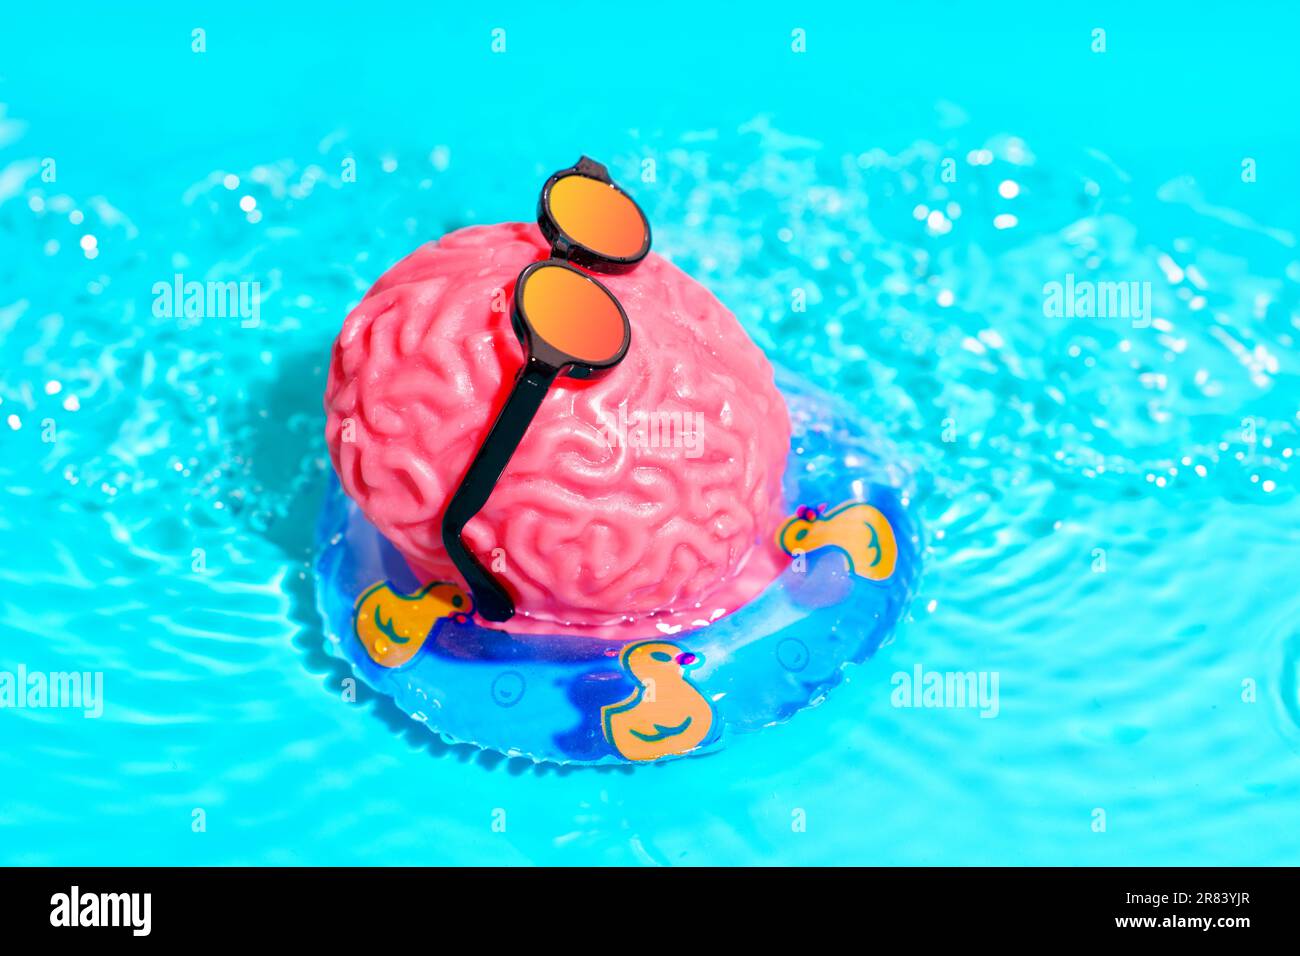 Die pinkfarbene Figur des menschlichen Gehirns trägt eine trendige Sonnenbrille und schwimmt mühelos in einem Pool auf einer aufblasbaren Röhre mit süßen Enten. Geistige Rejuvenatio Stockfoto